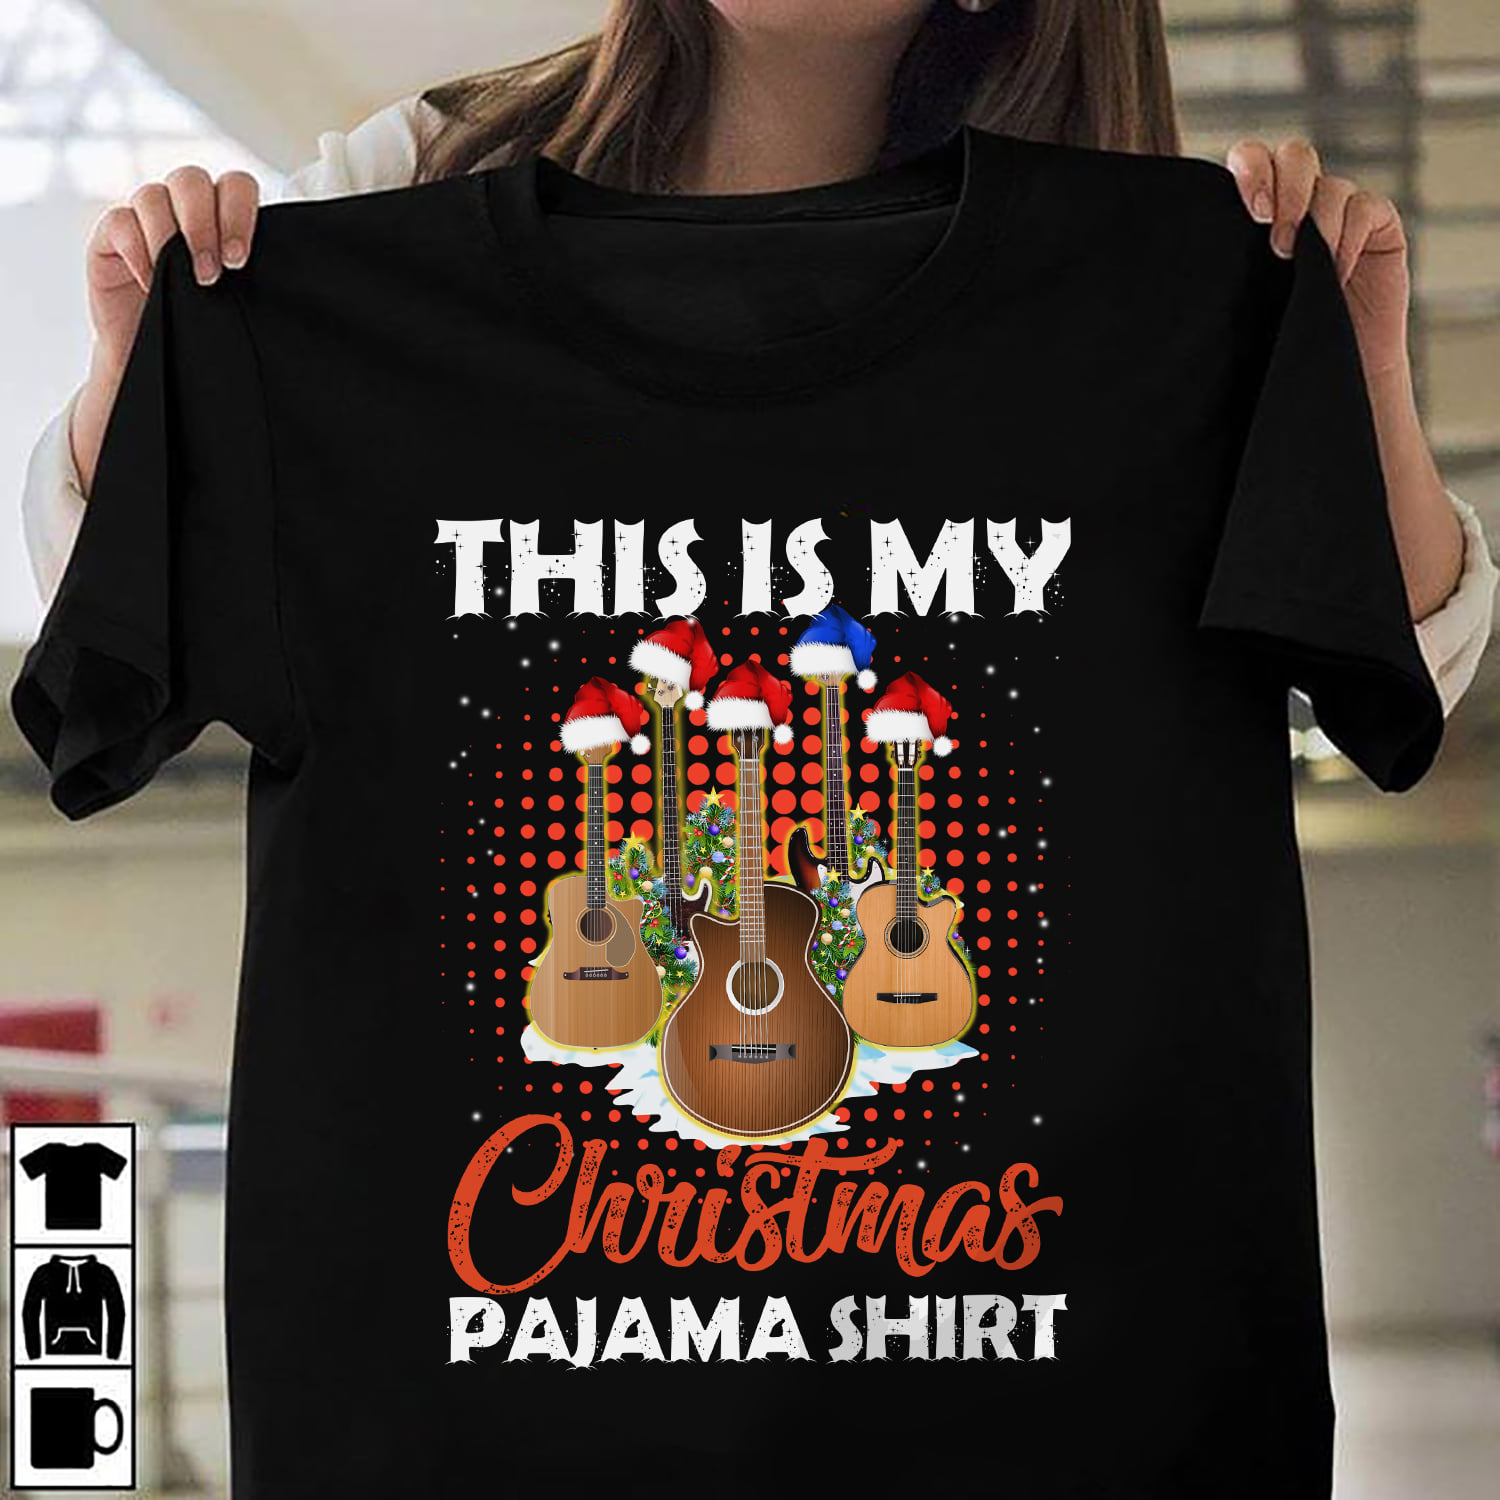 This is my Christmas pajama shirt - Guitar for Christmas, Gift for Guitarist